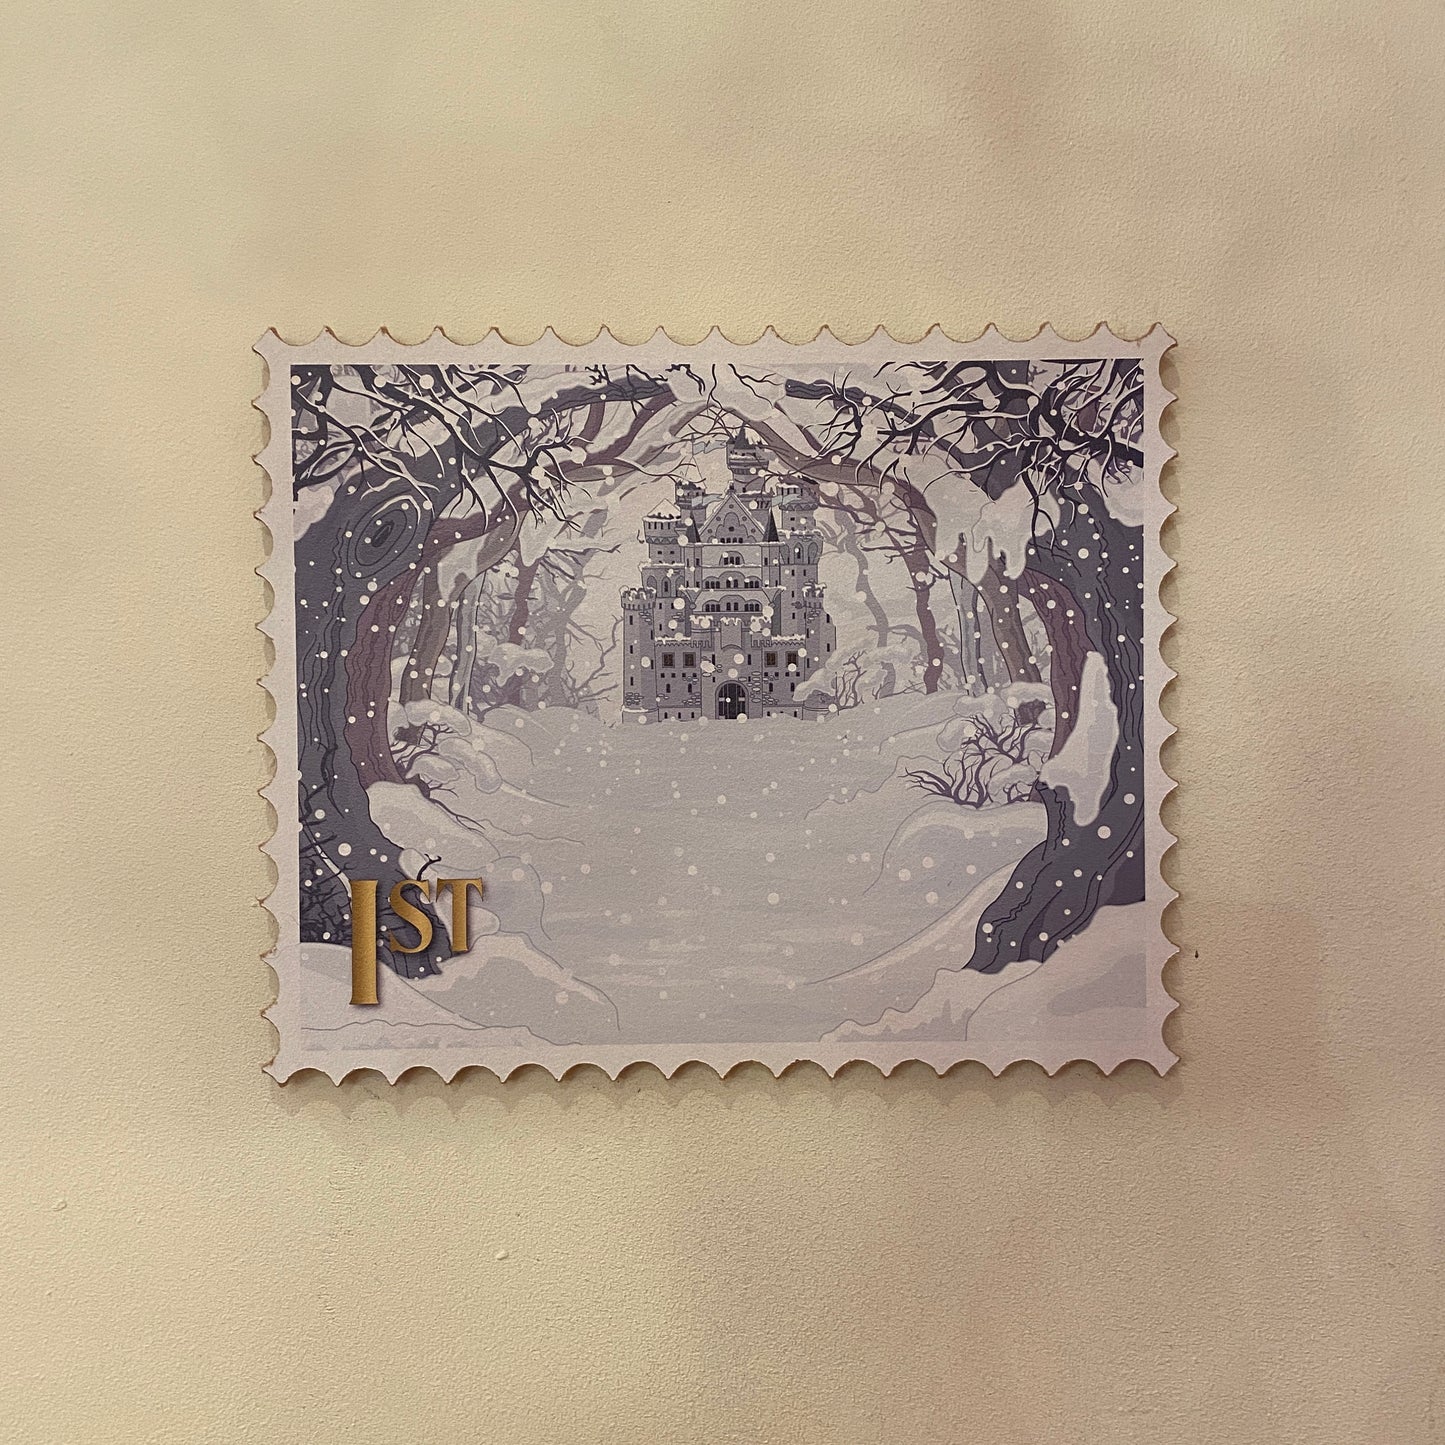 Giant Christmas Stamps